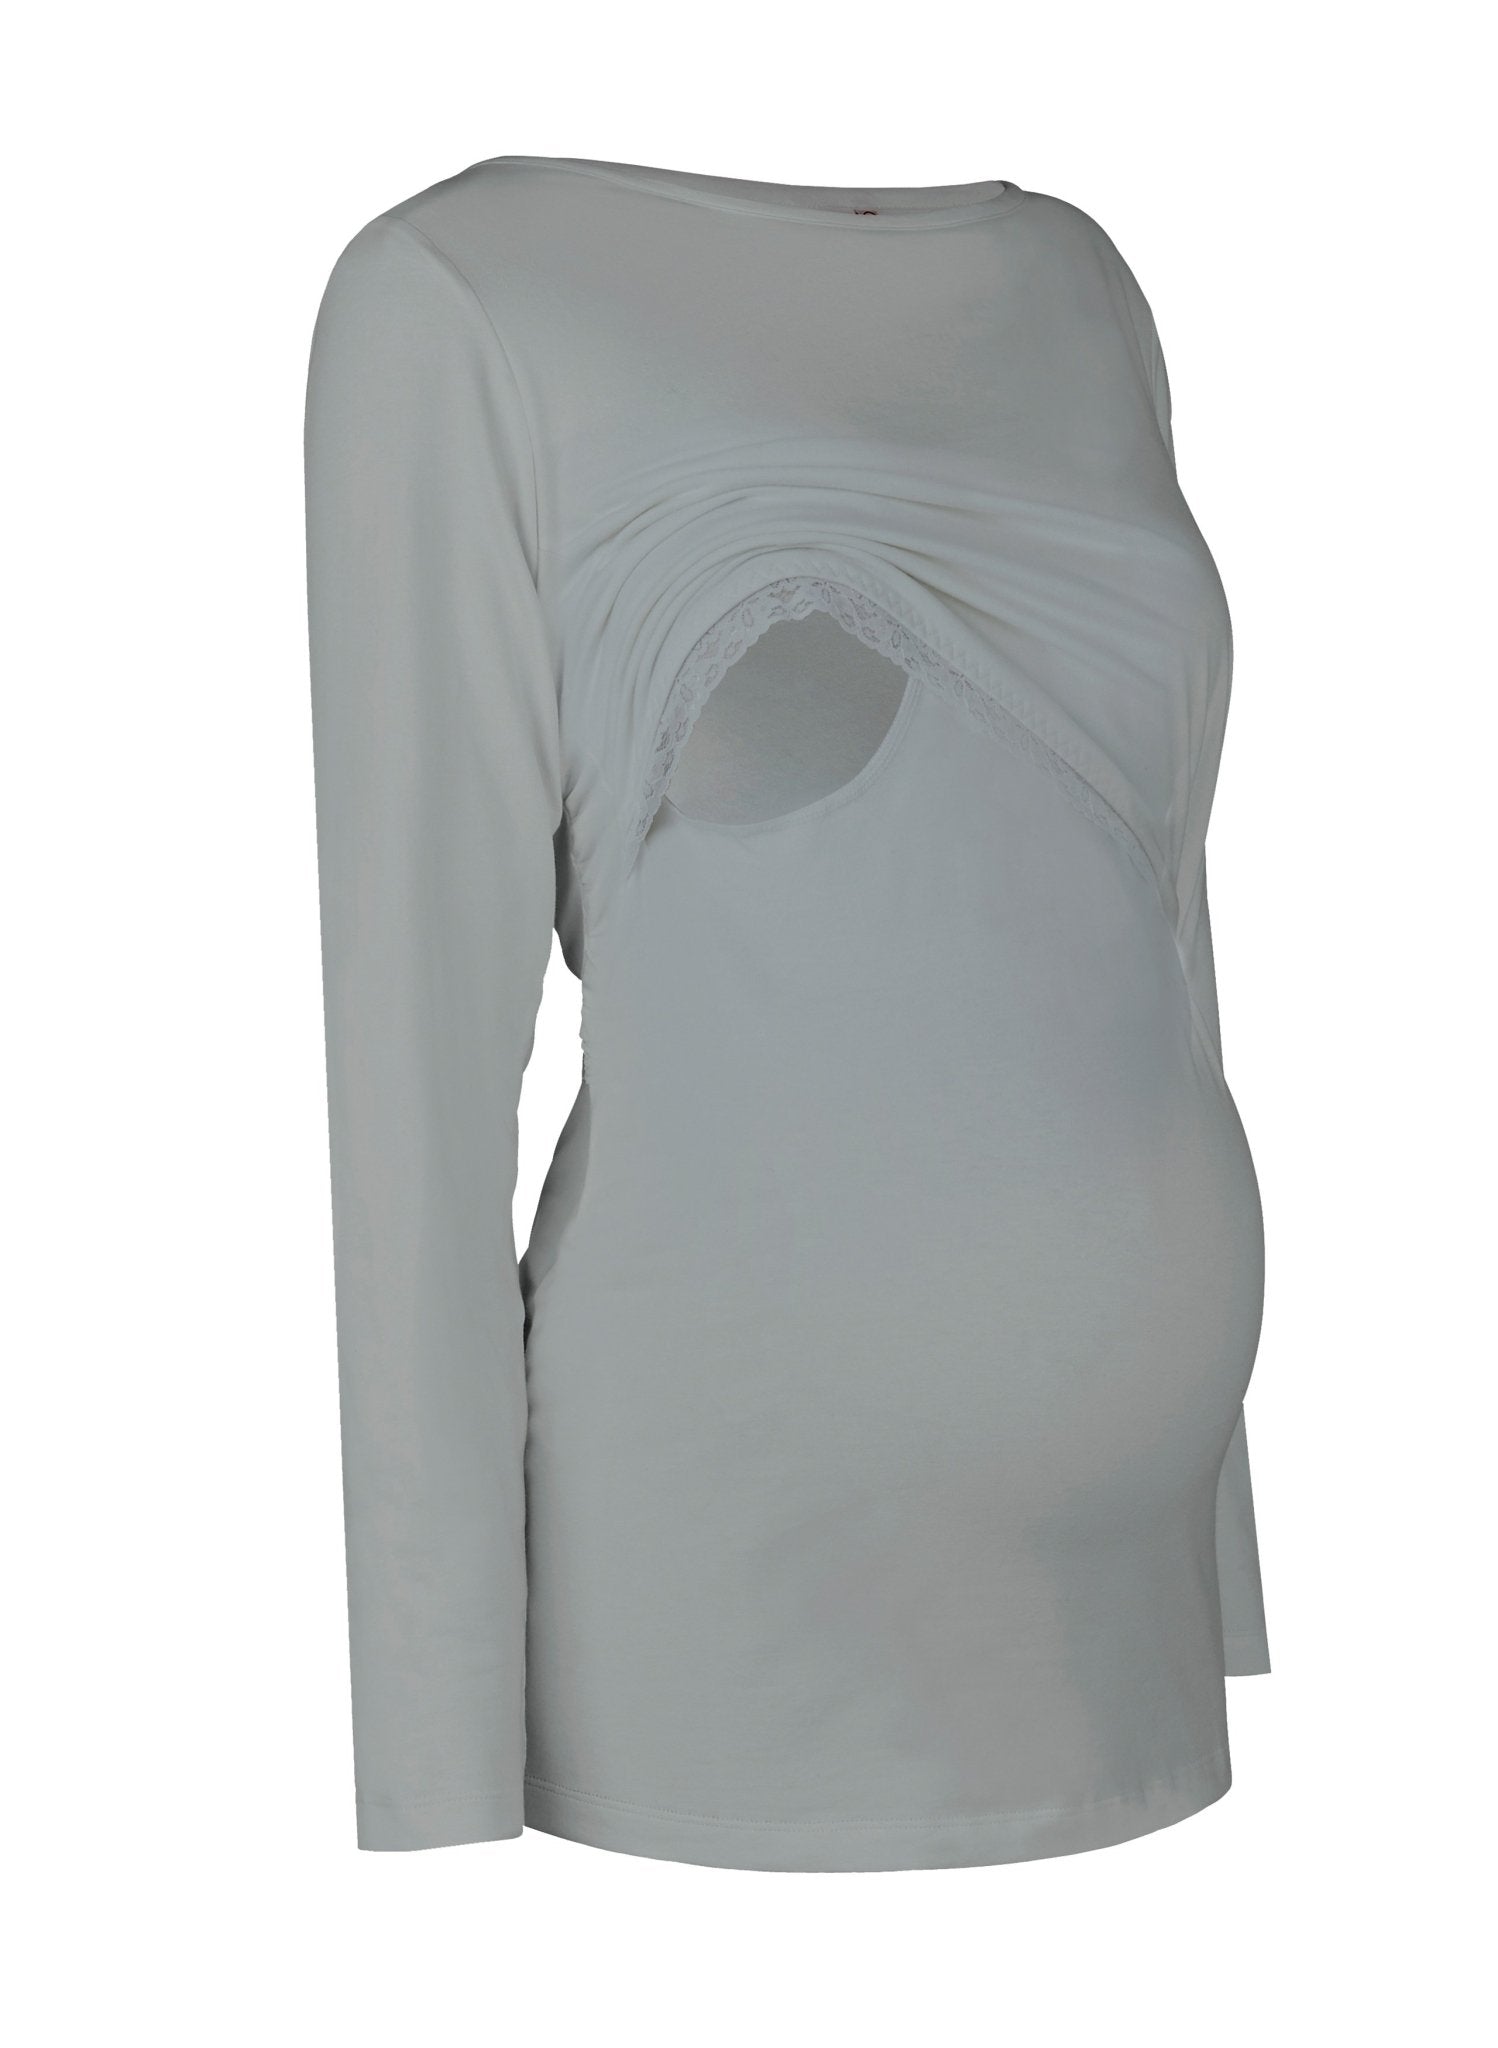 Long Sleeves Breastfeeding Shirt - Grey - Mums and Bumps